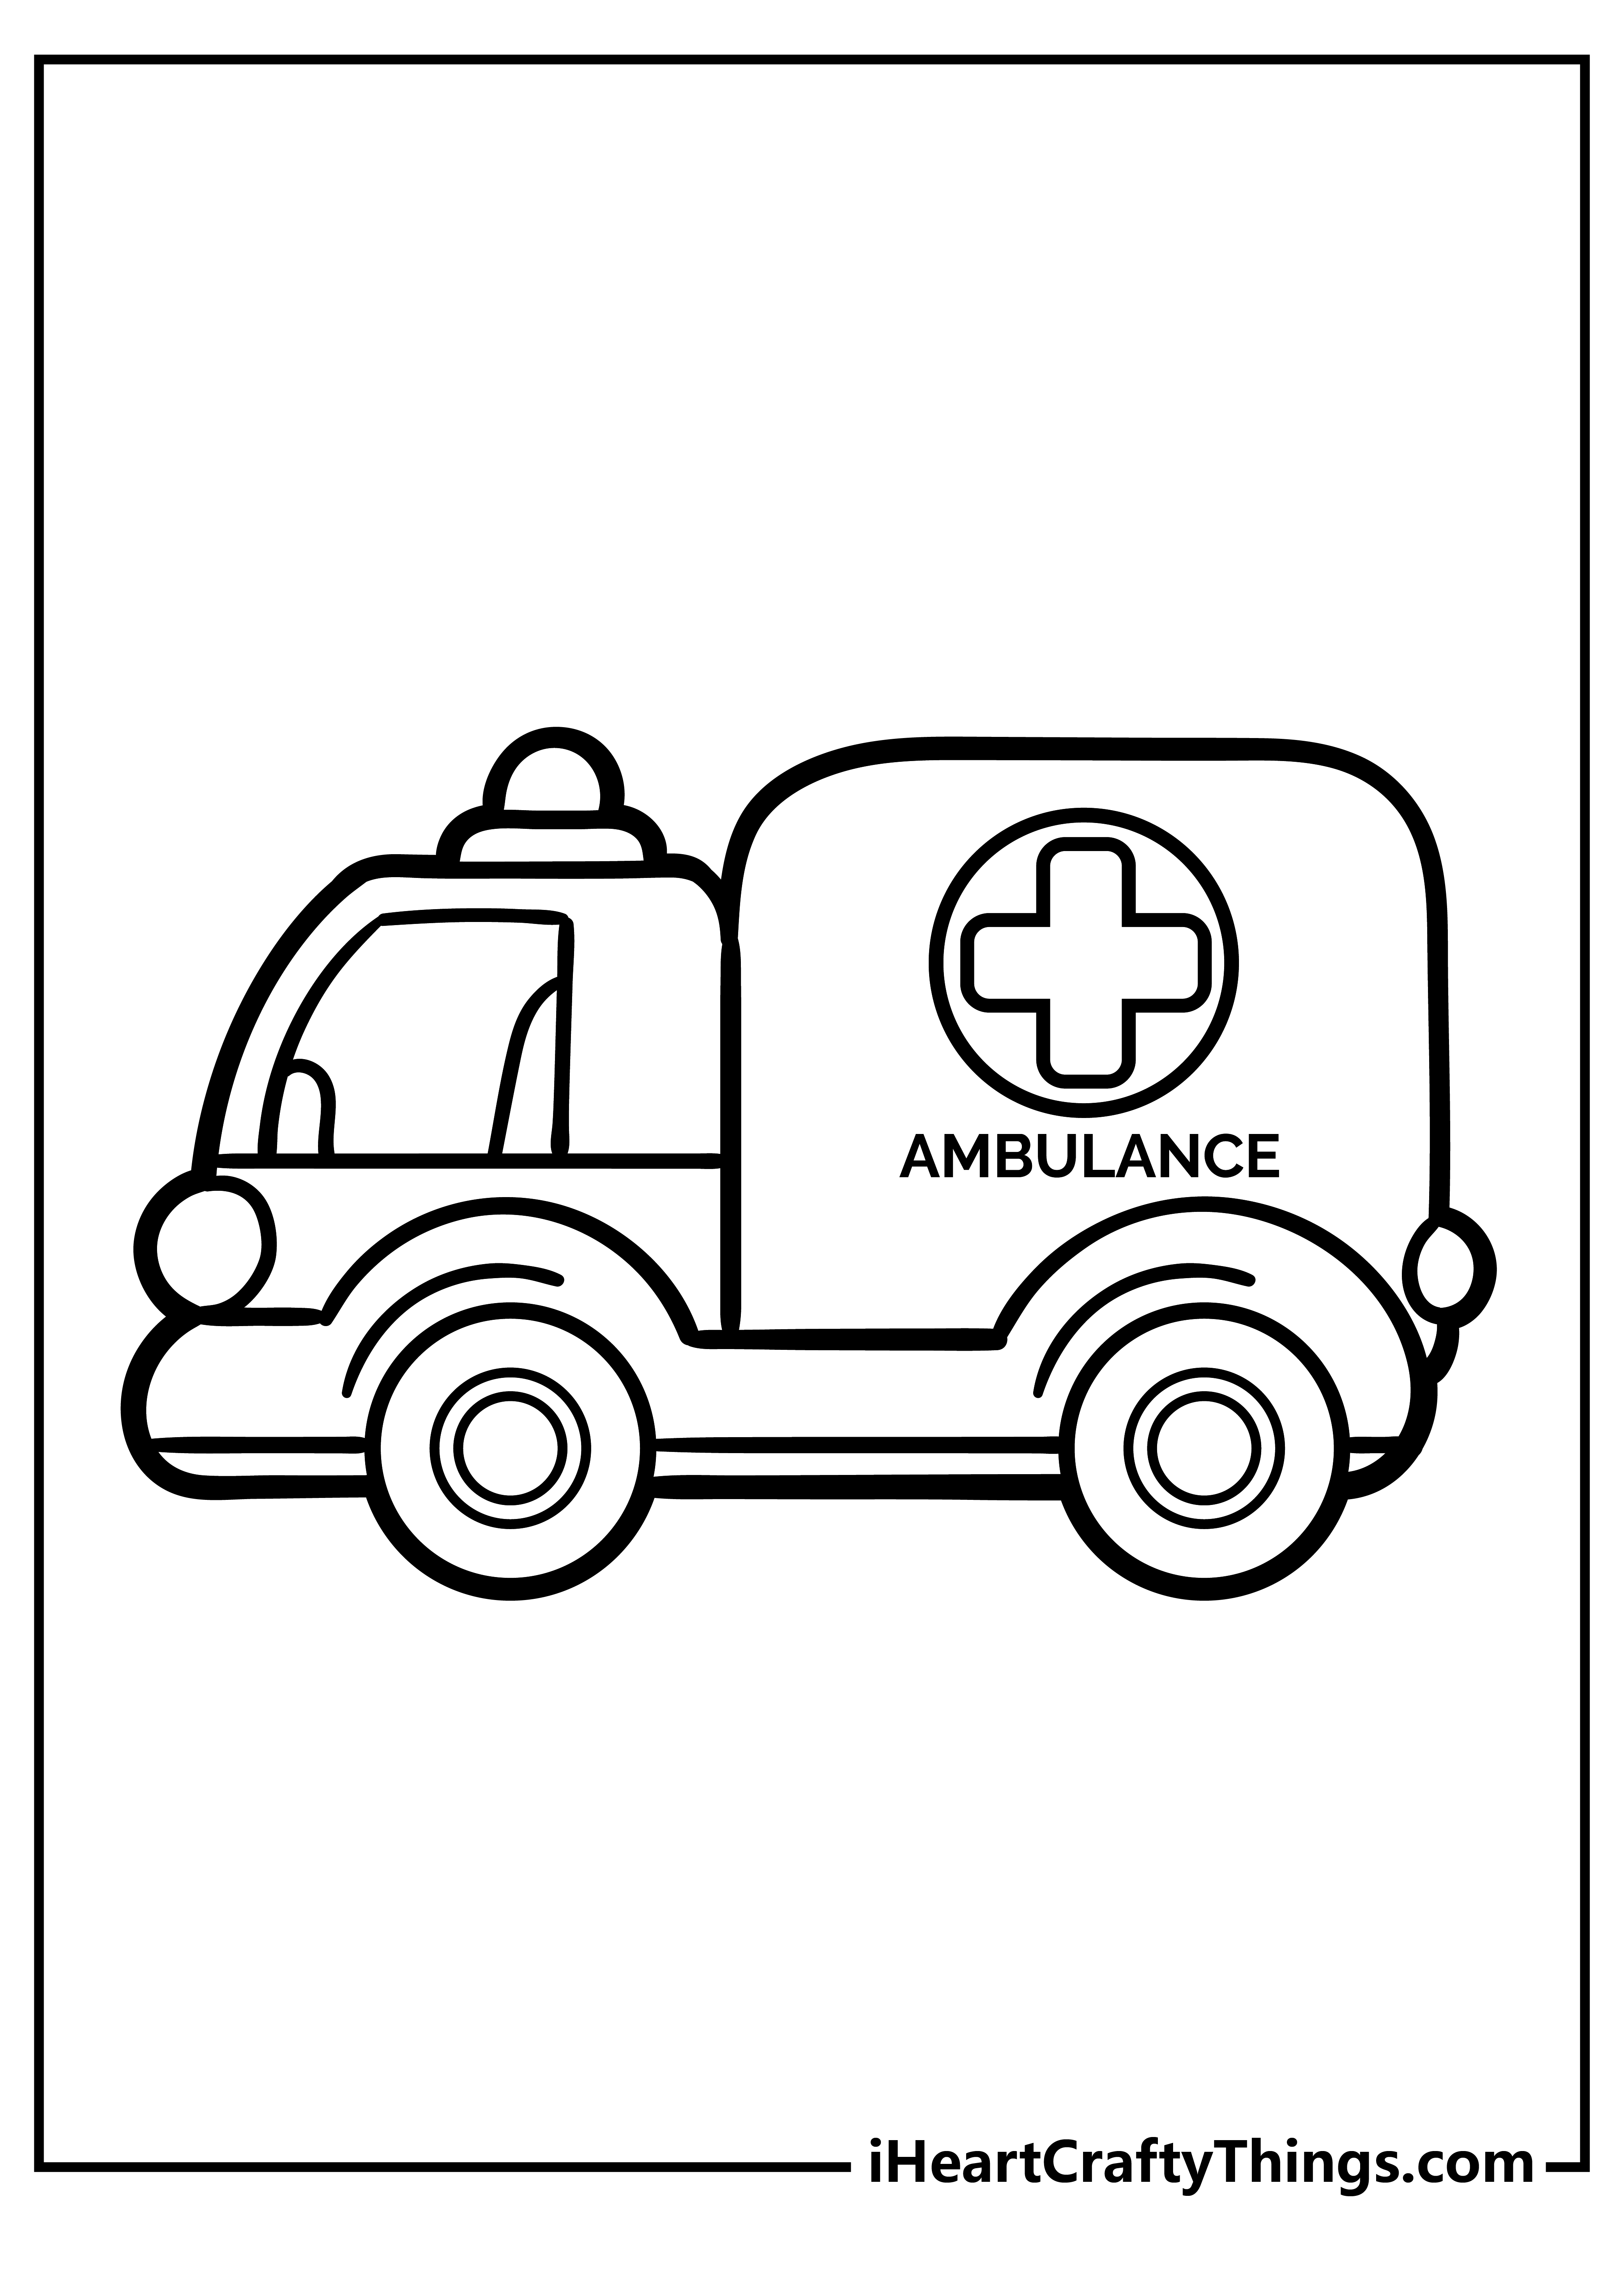 Ambulance Drawing Beautiful Image